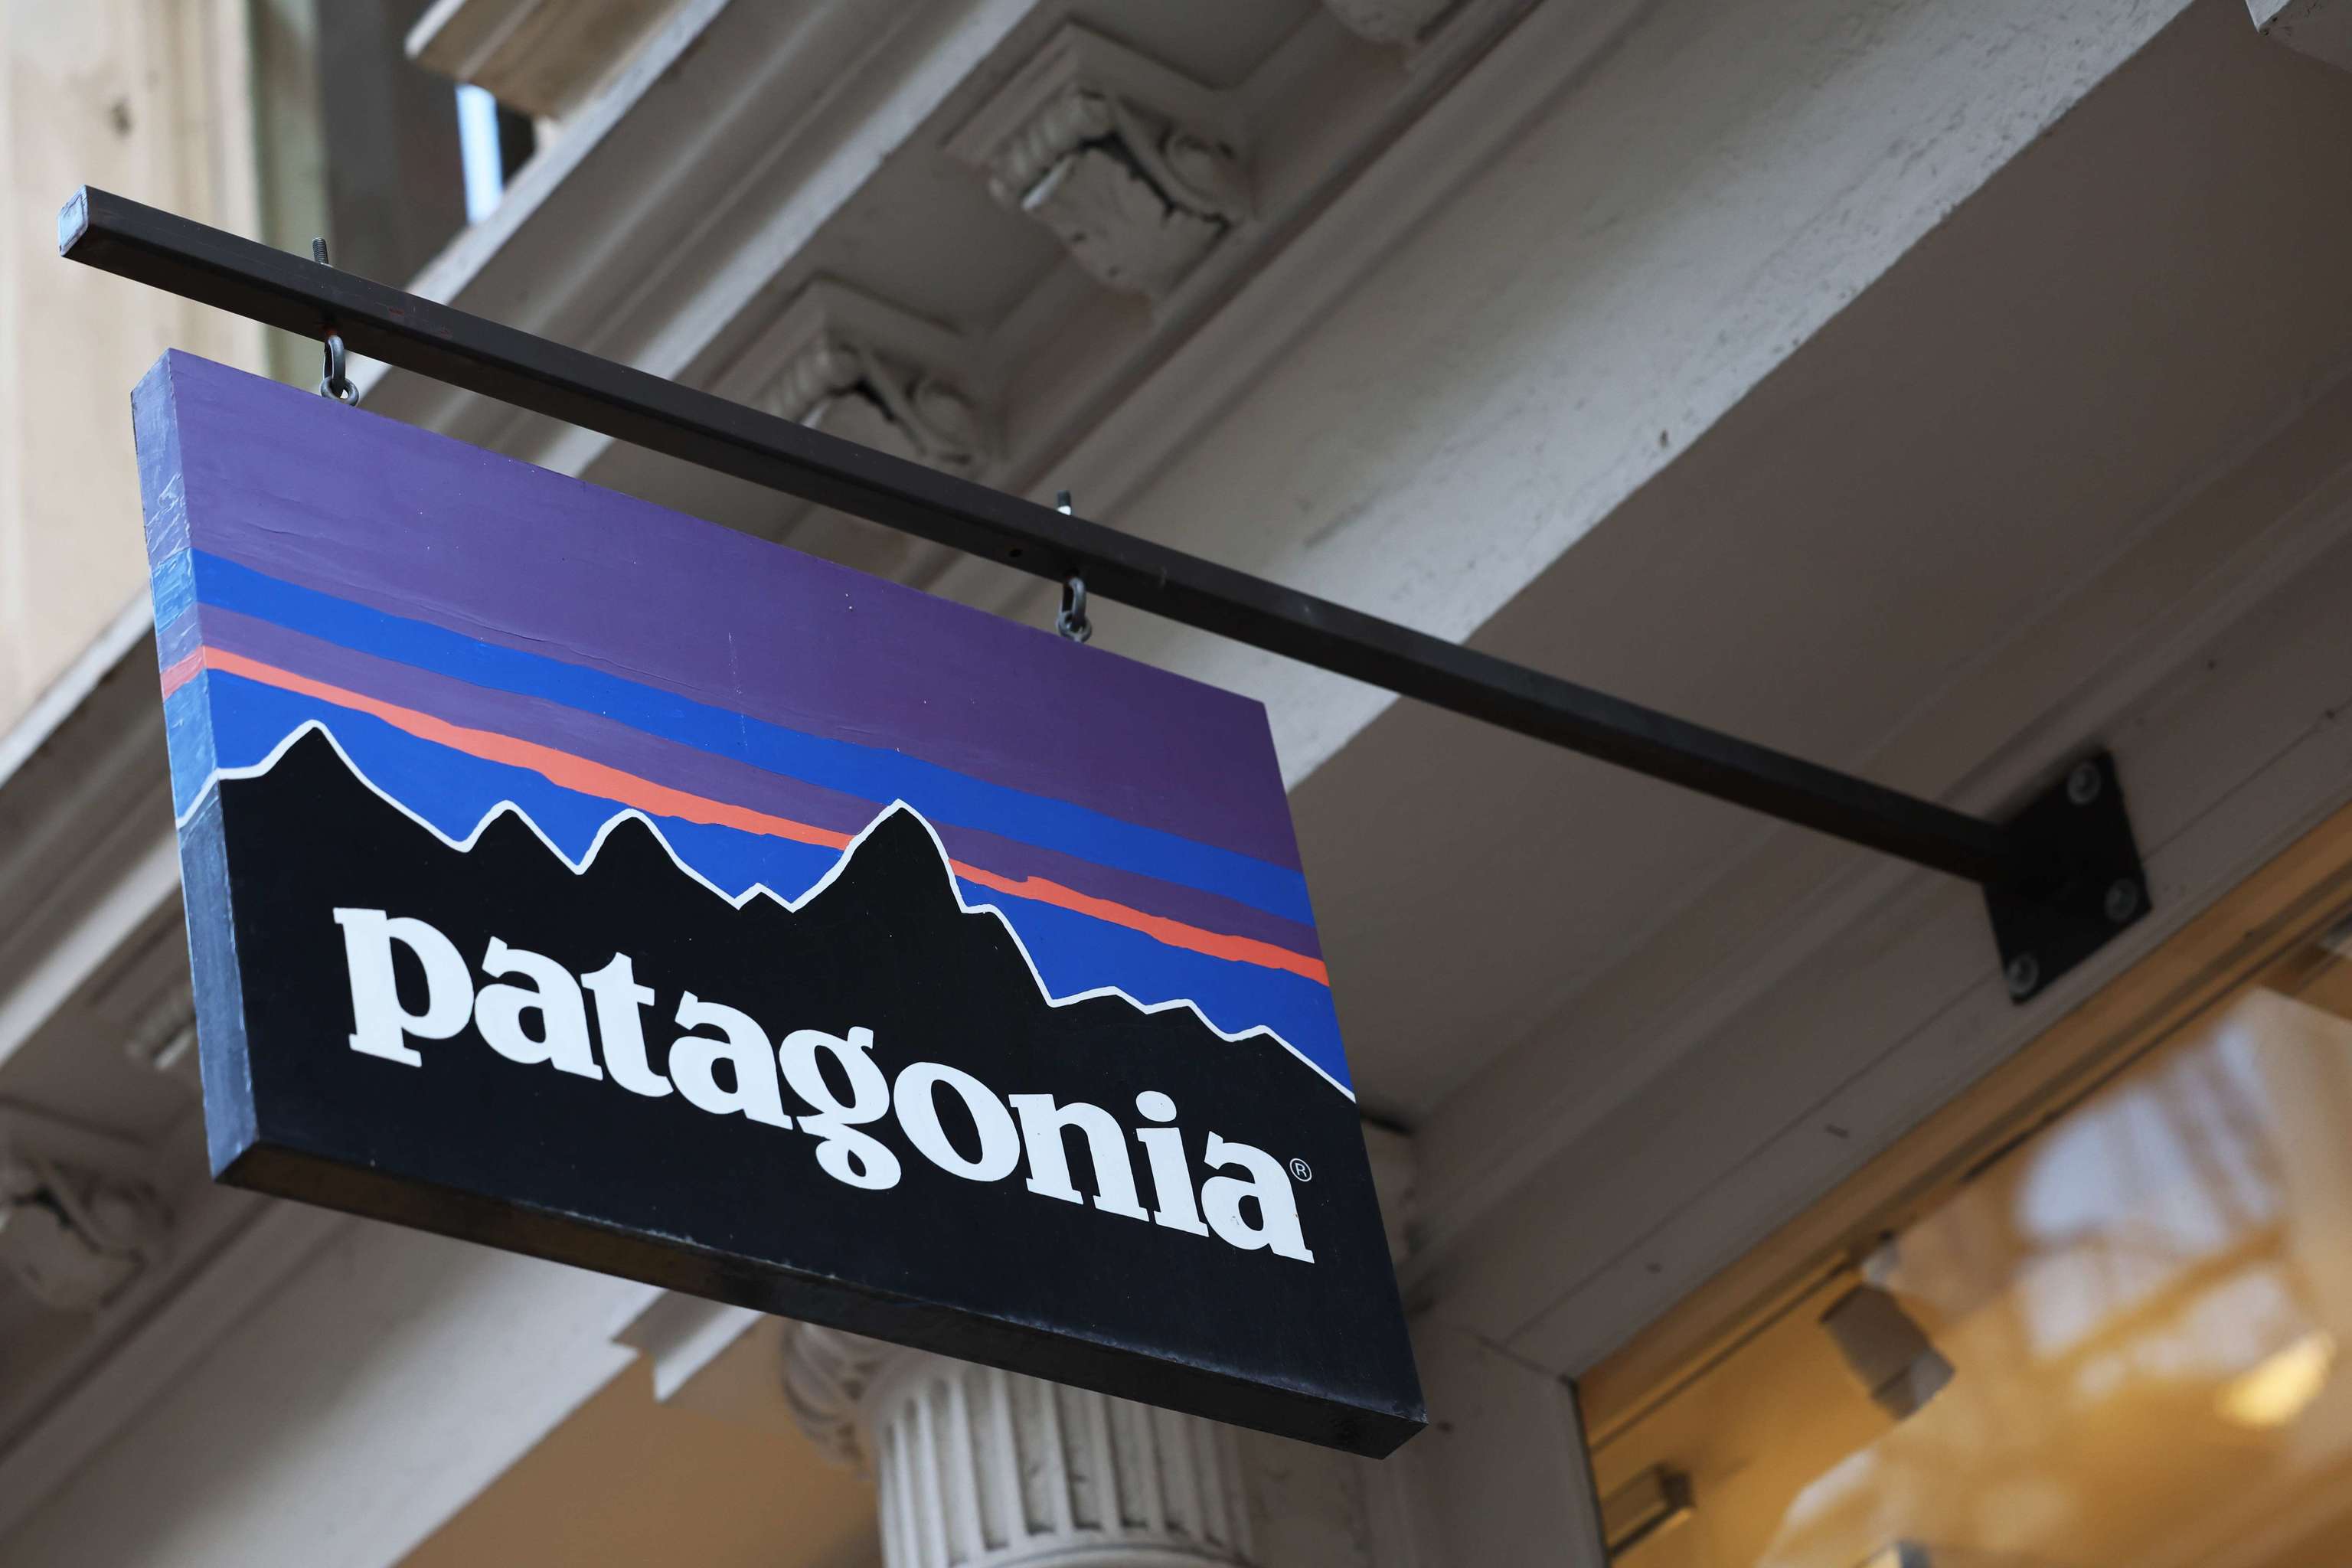 El fundador de Patagonia dona marca de ropa para la protección del medioambiente | Empresas